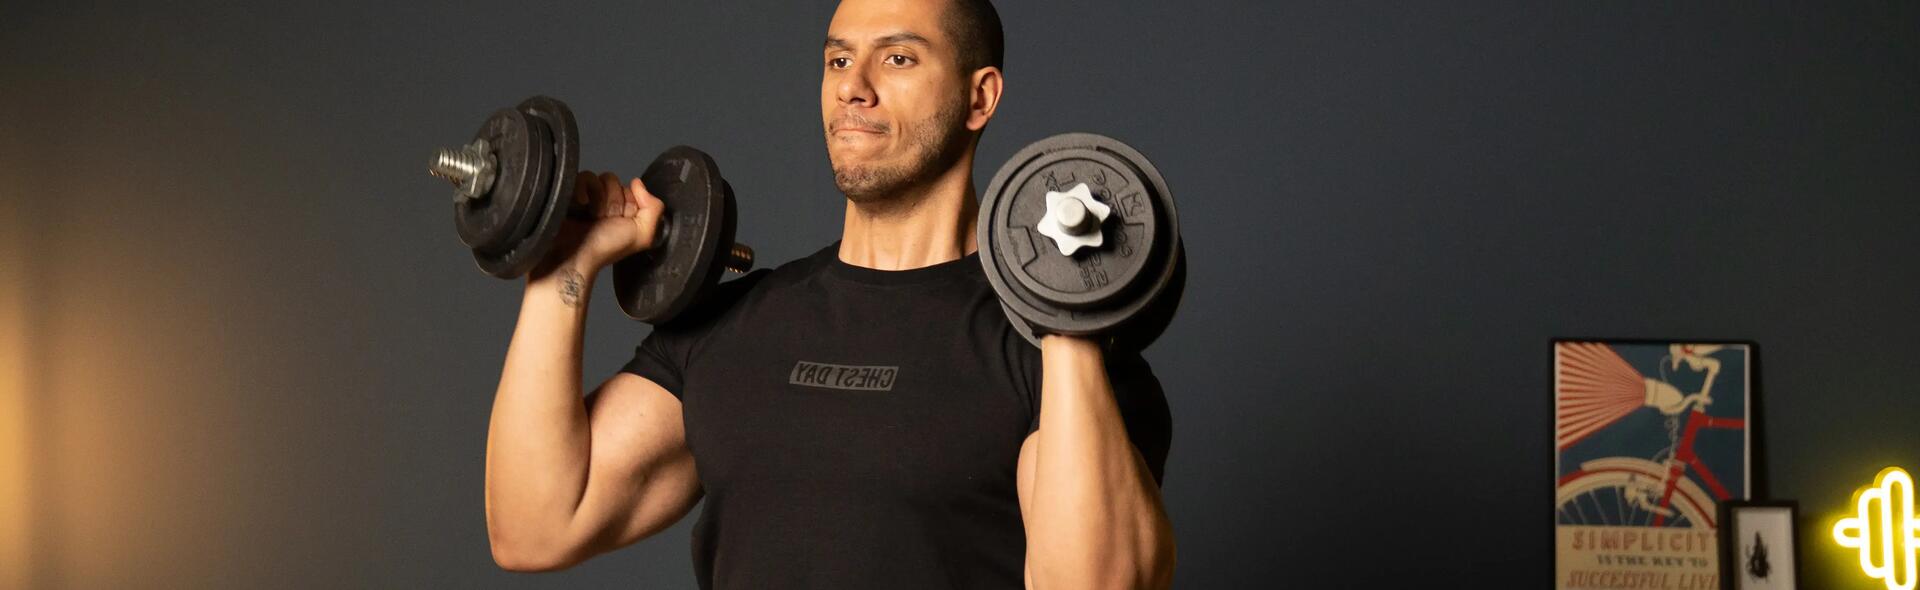 Les muscles des bras - fiche santé du décathlon